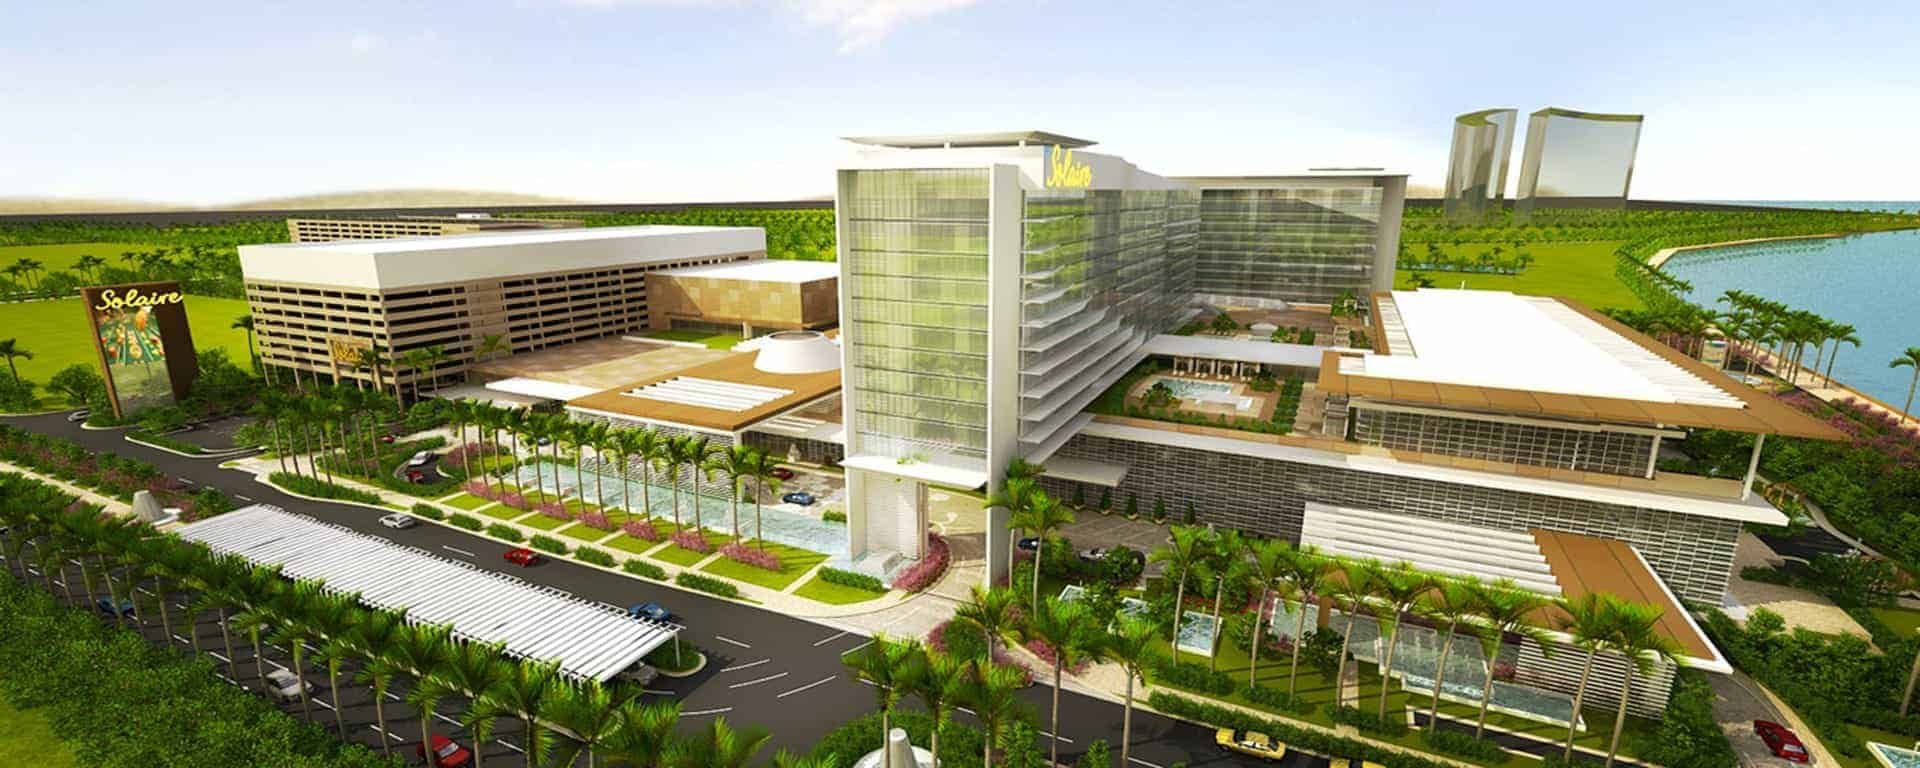 Solaire Resort & Casino in Philippines